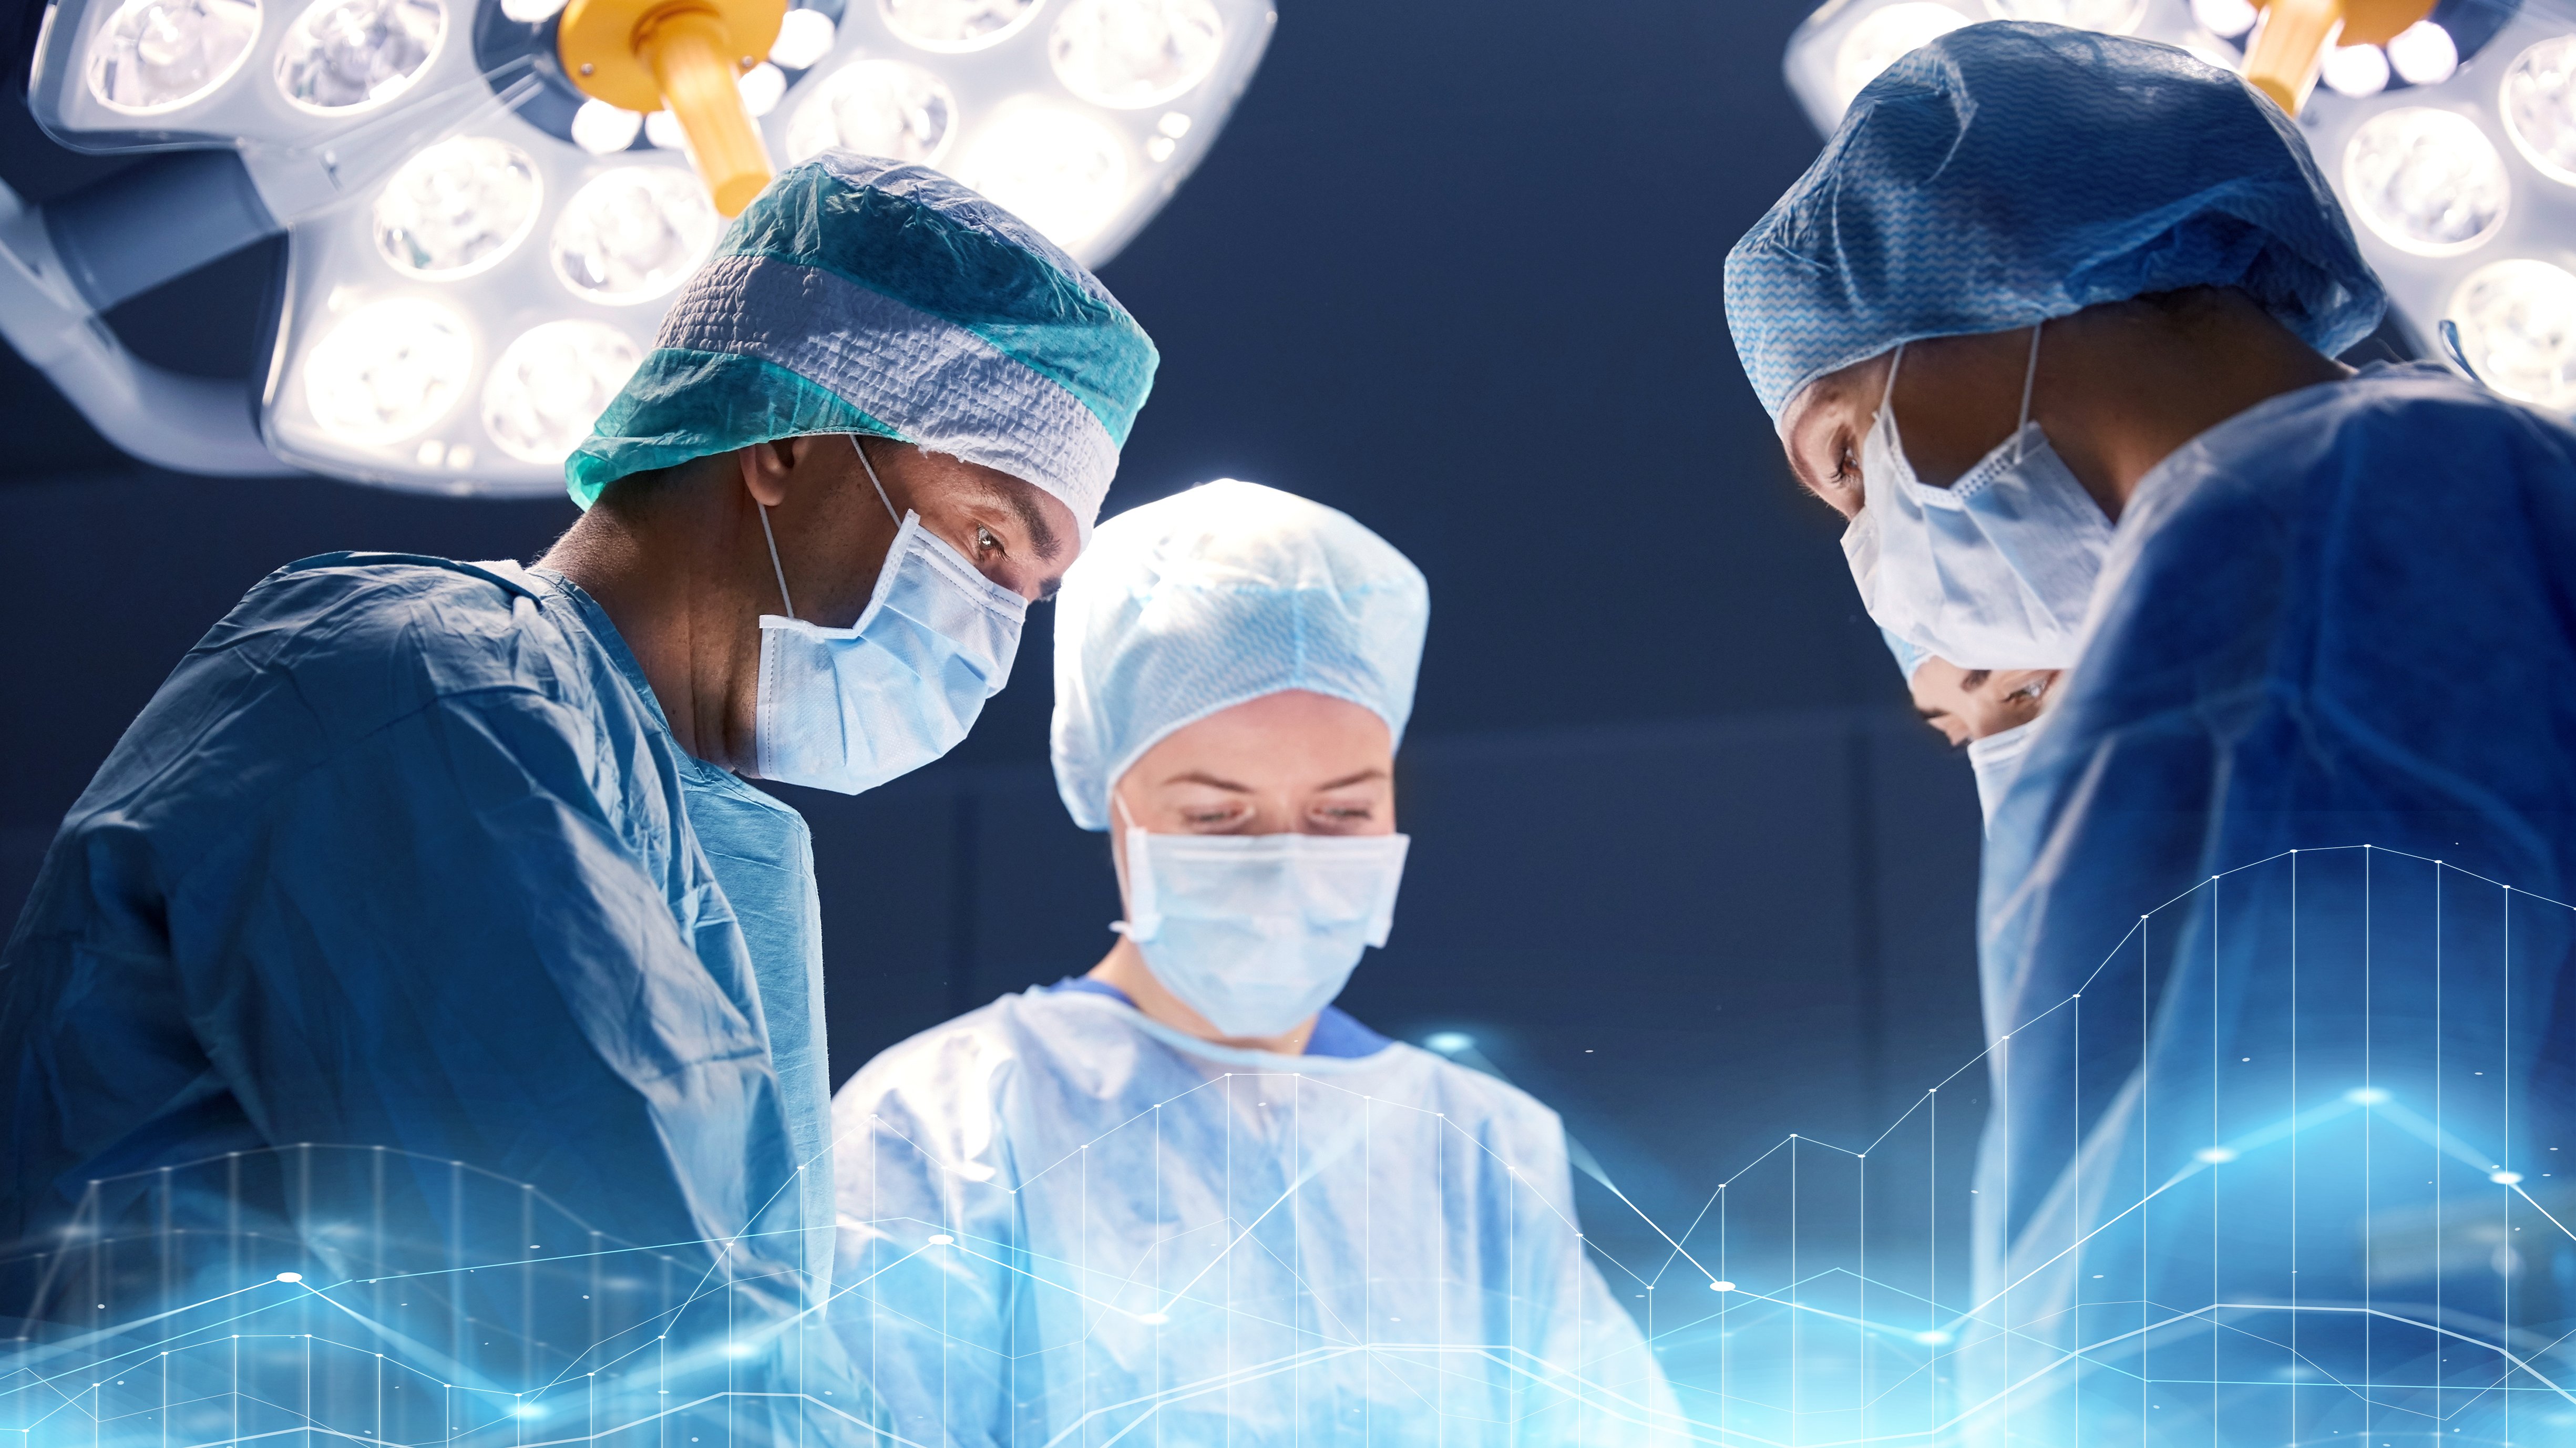 Gruppe von Chirurgen bei der Operation im Operationssaal des Krankenhauses | Quelle: Shutterstock